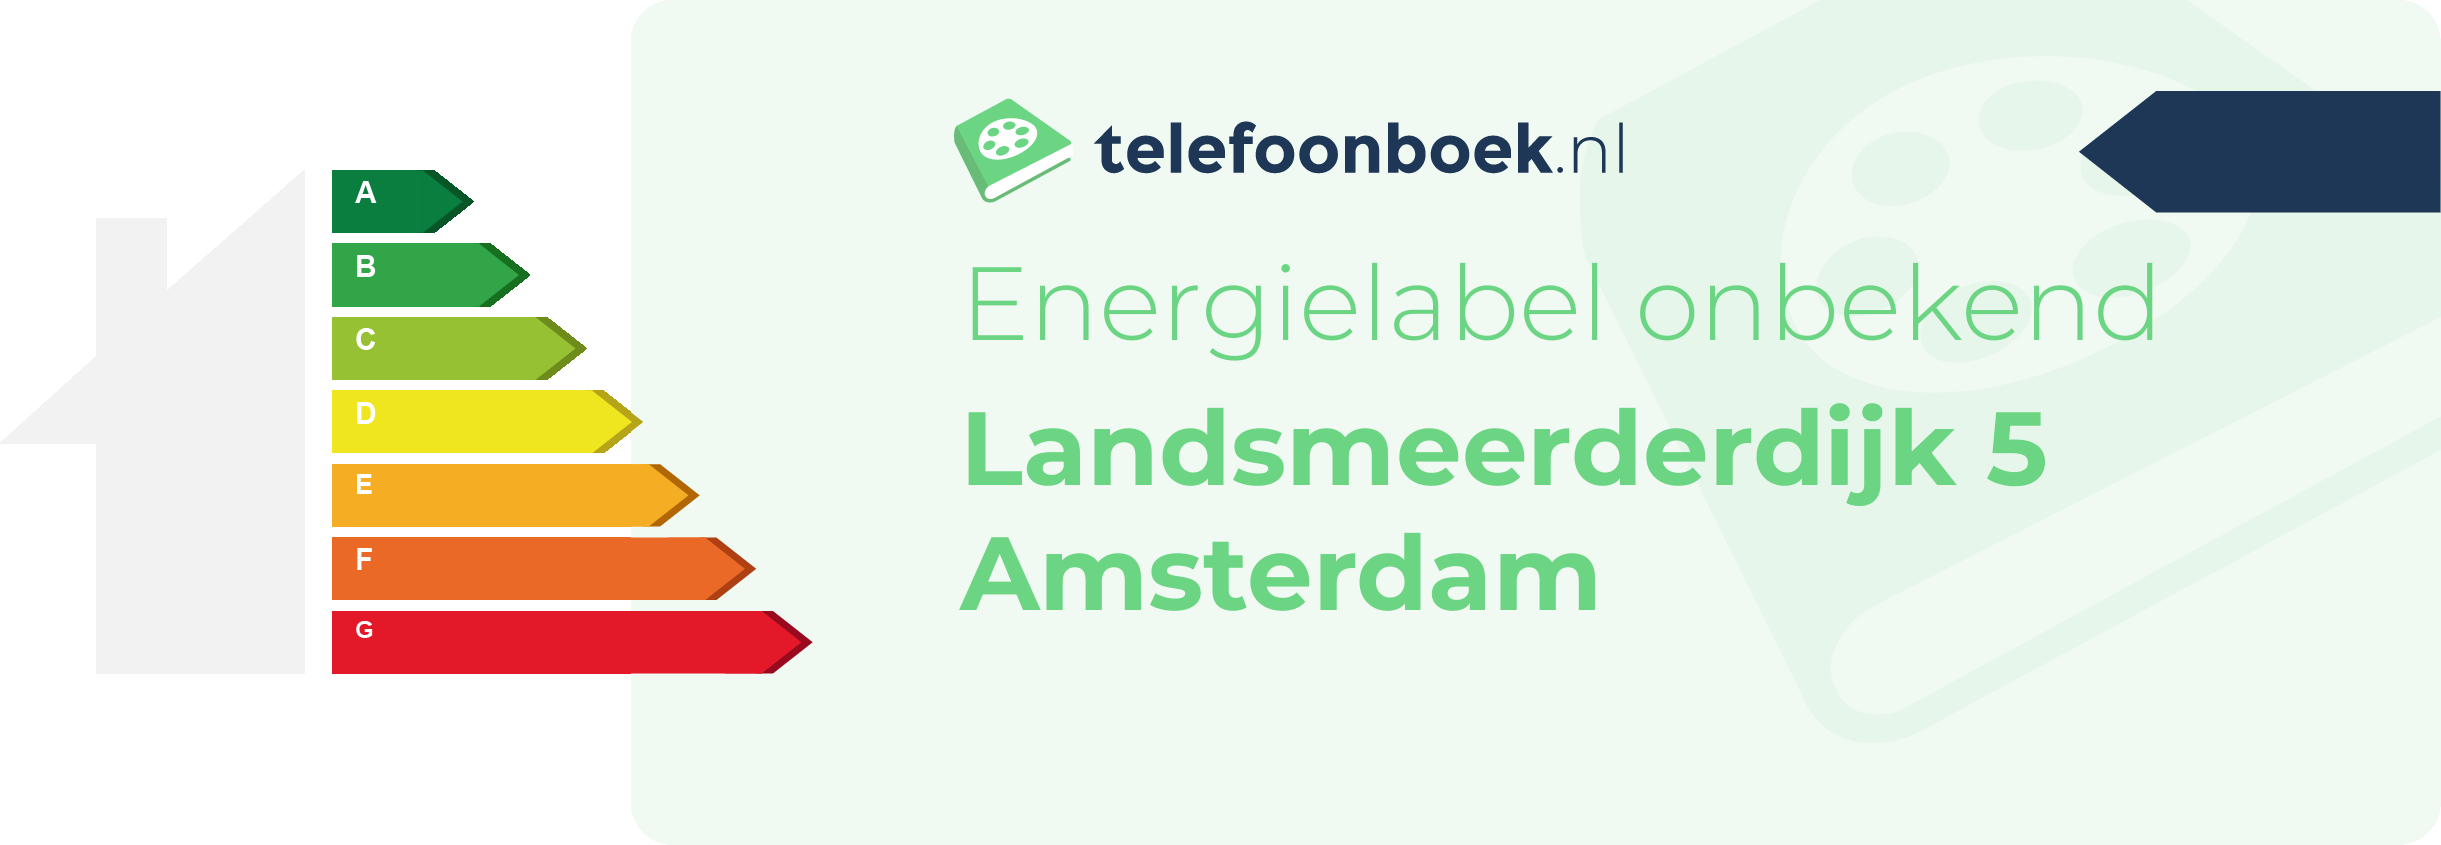 Energielabel Landsmeerderdijk 5 Amsterdam